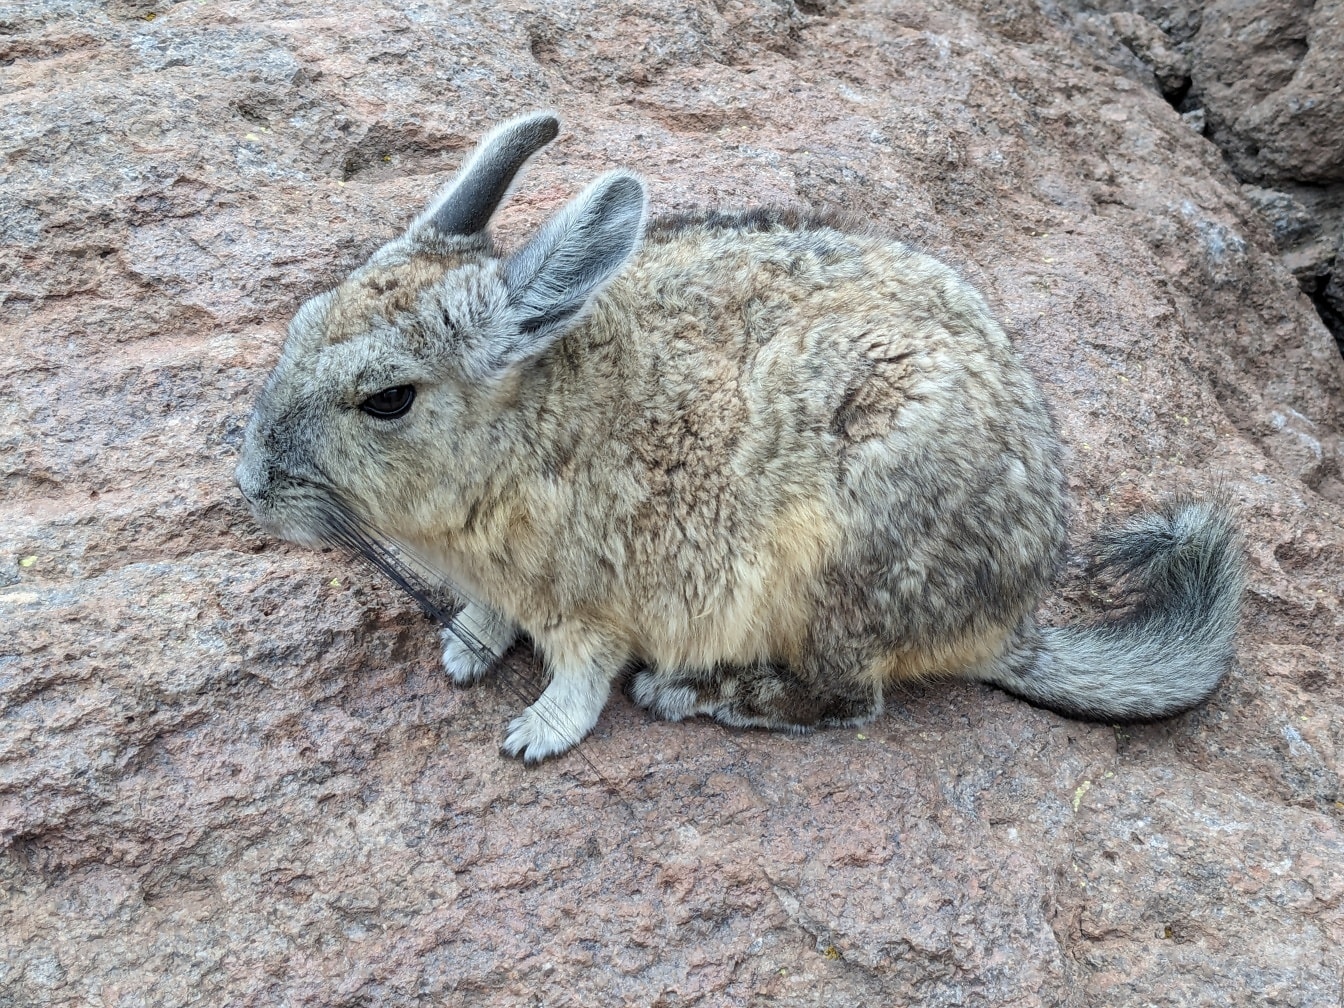 Viscacha jižní, malý hlodavec pocházející z Jižní Ameriky, se podobá králíkům (Lagidium viscacia)